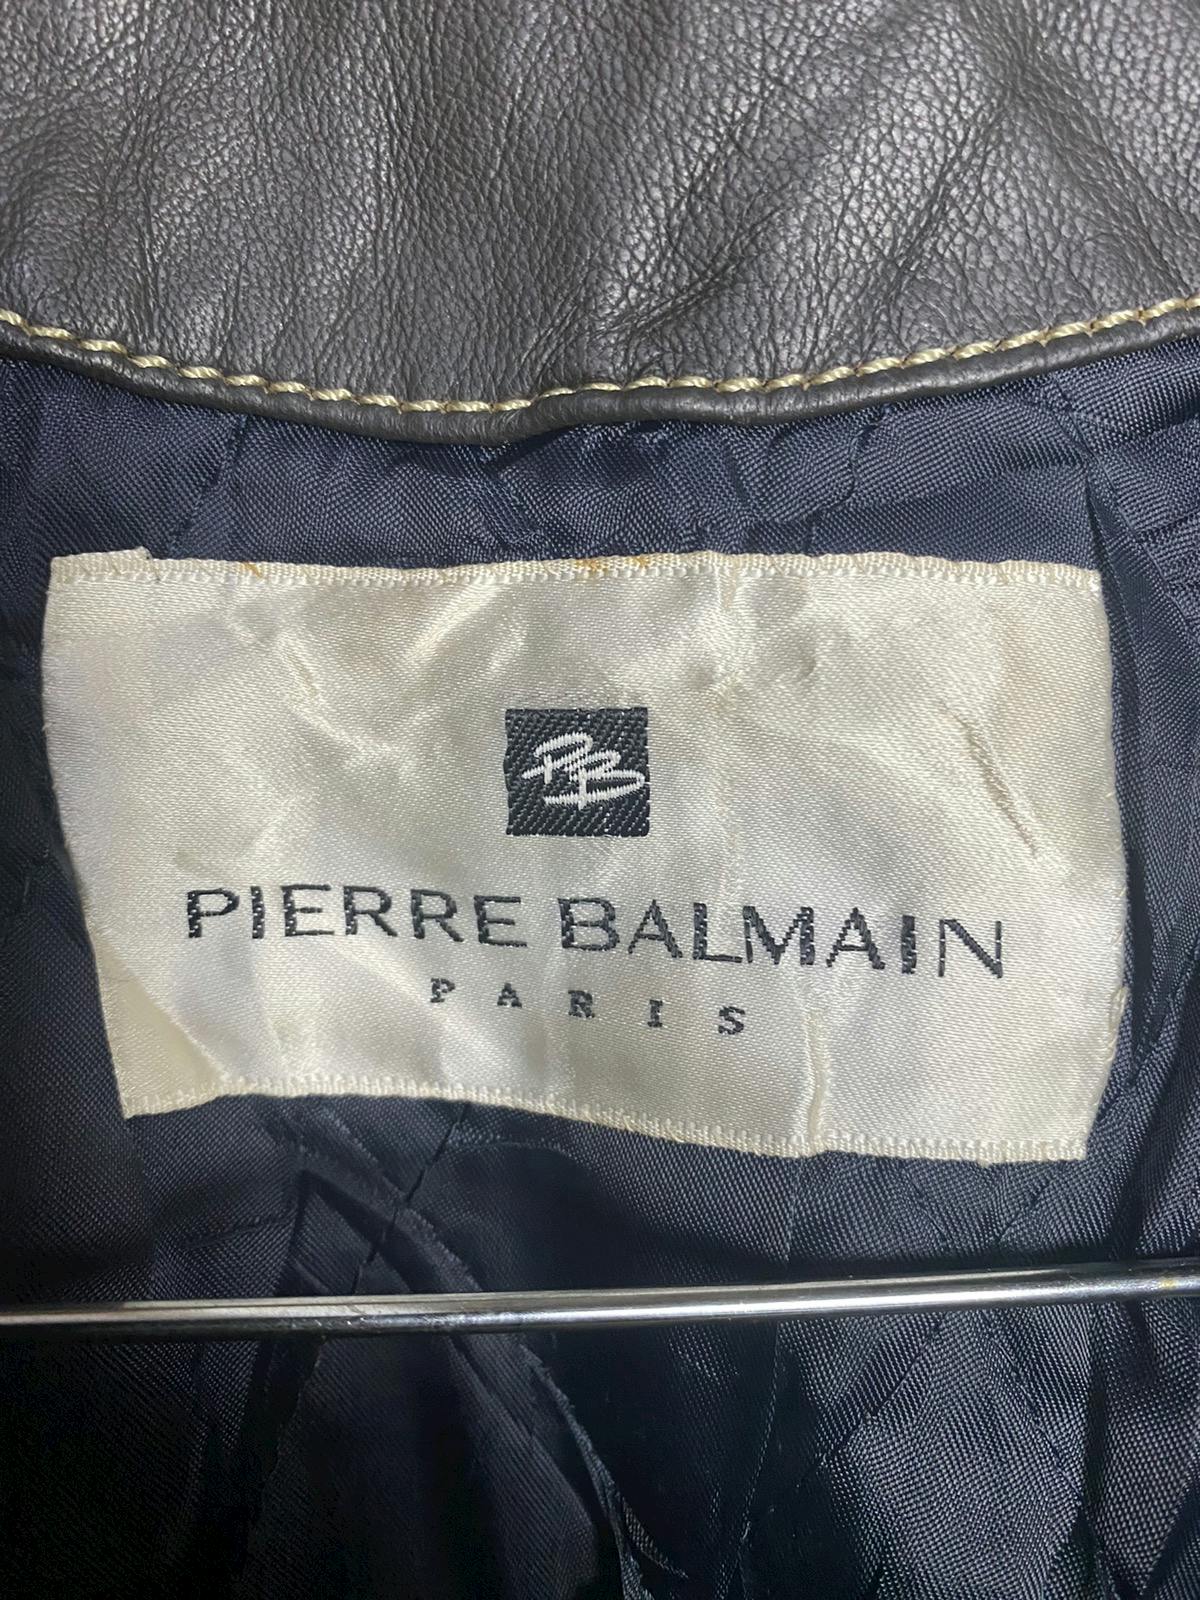 Pierre Balmain Paris Leather Jacket - 11